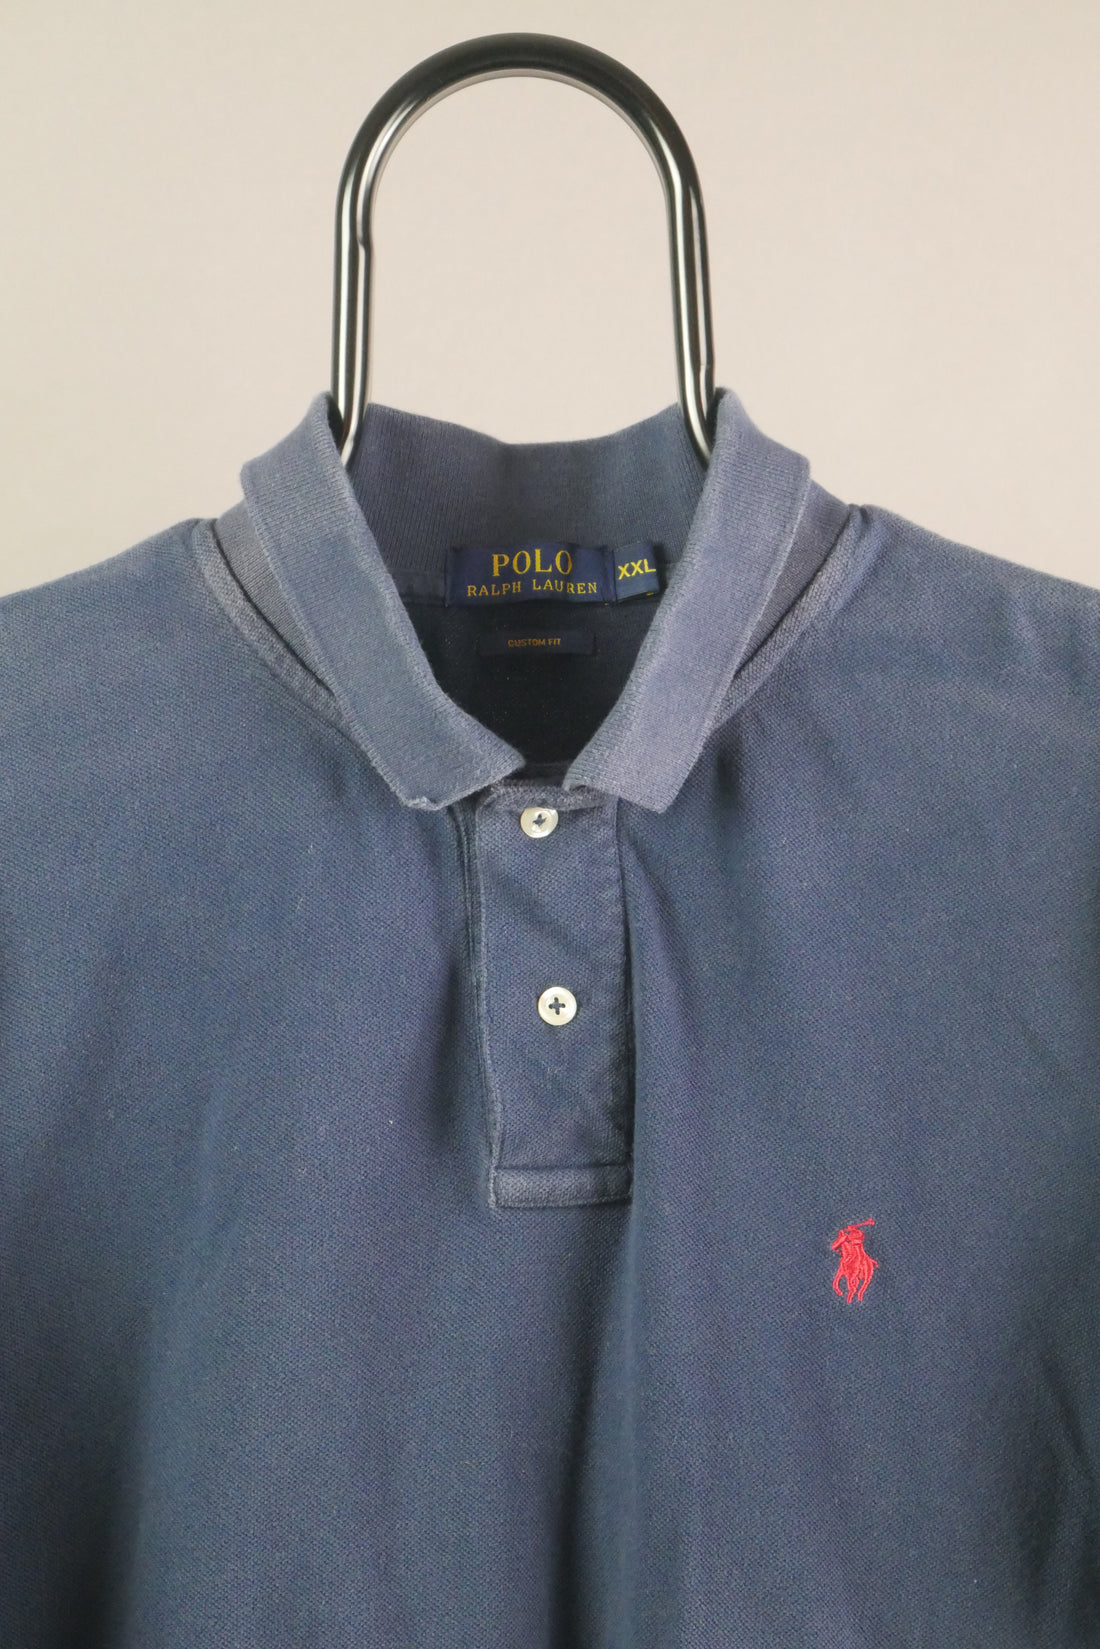 The Polo Ralph Lauren Embroidered Logo Polo (2XL)